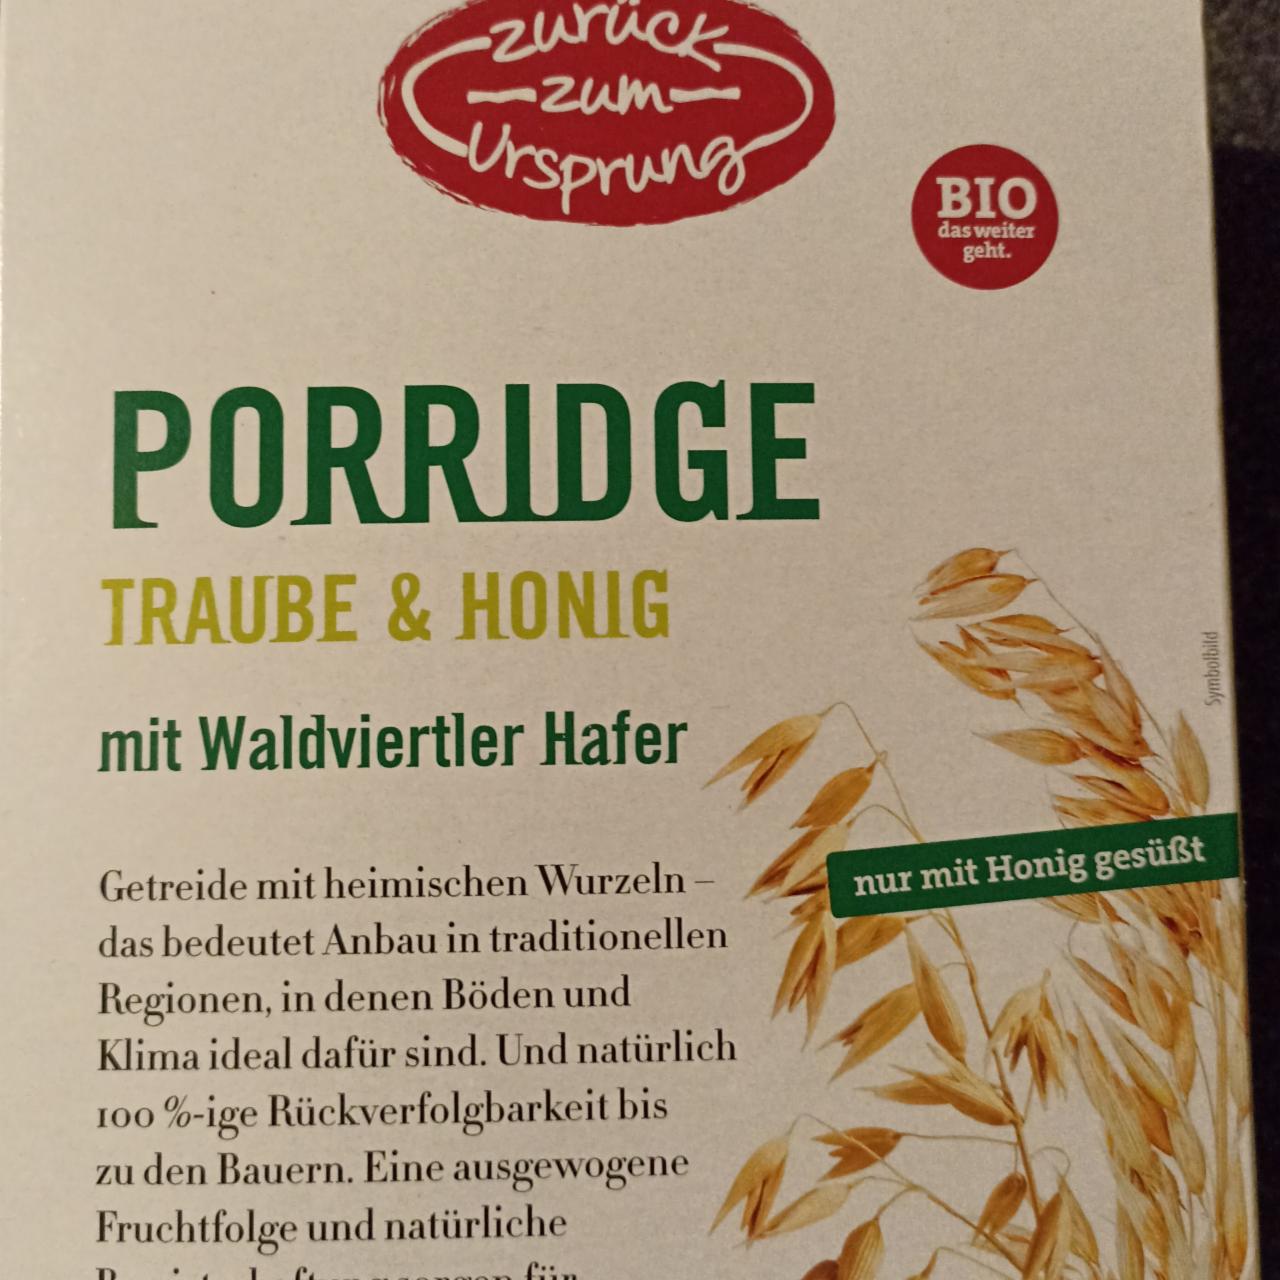 Fotografie - Porridge Traube & Honig Zurück zum Ursprung